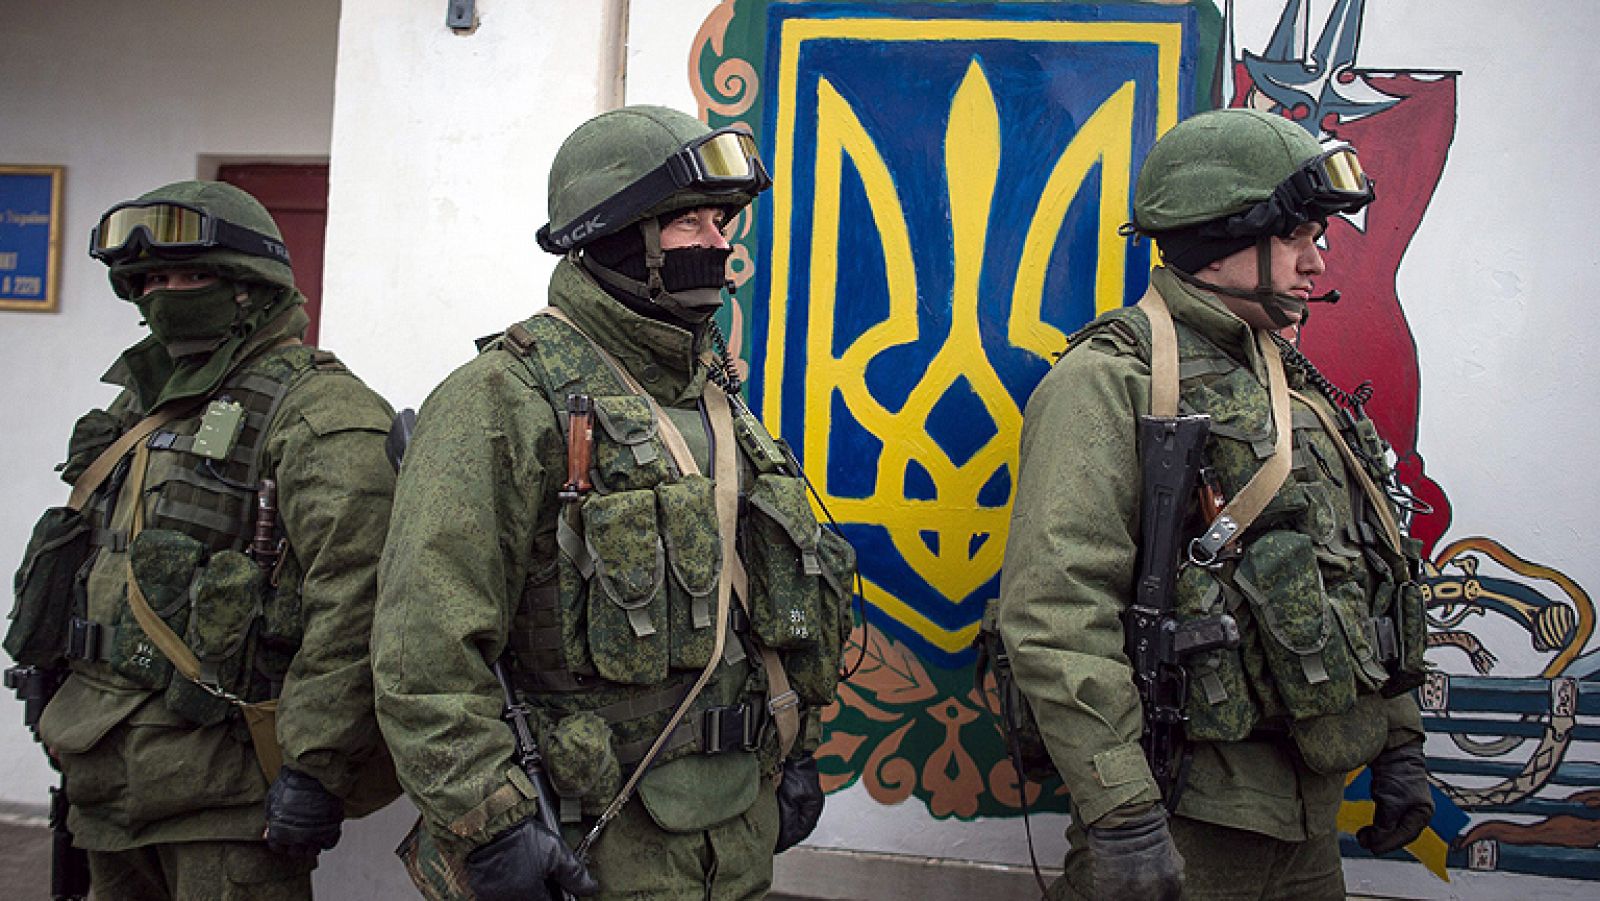  El Gobierno de Crimea ha anunciado que ha asumido el control sobre la seguridad de la península ucraniana, al tiempo que dio un ultimátum a los últimos oficiales del Ejército leales a Kiev para que se subordinen a las autoridades de la república.